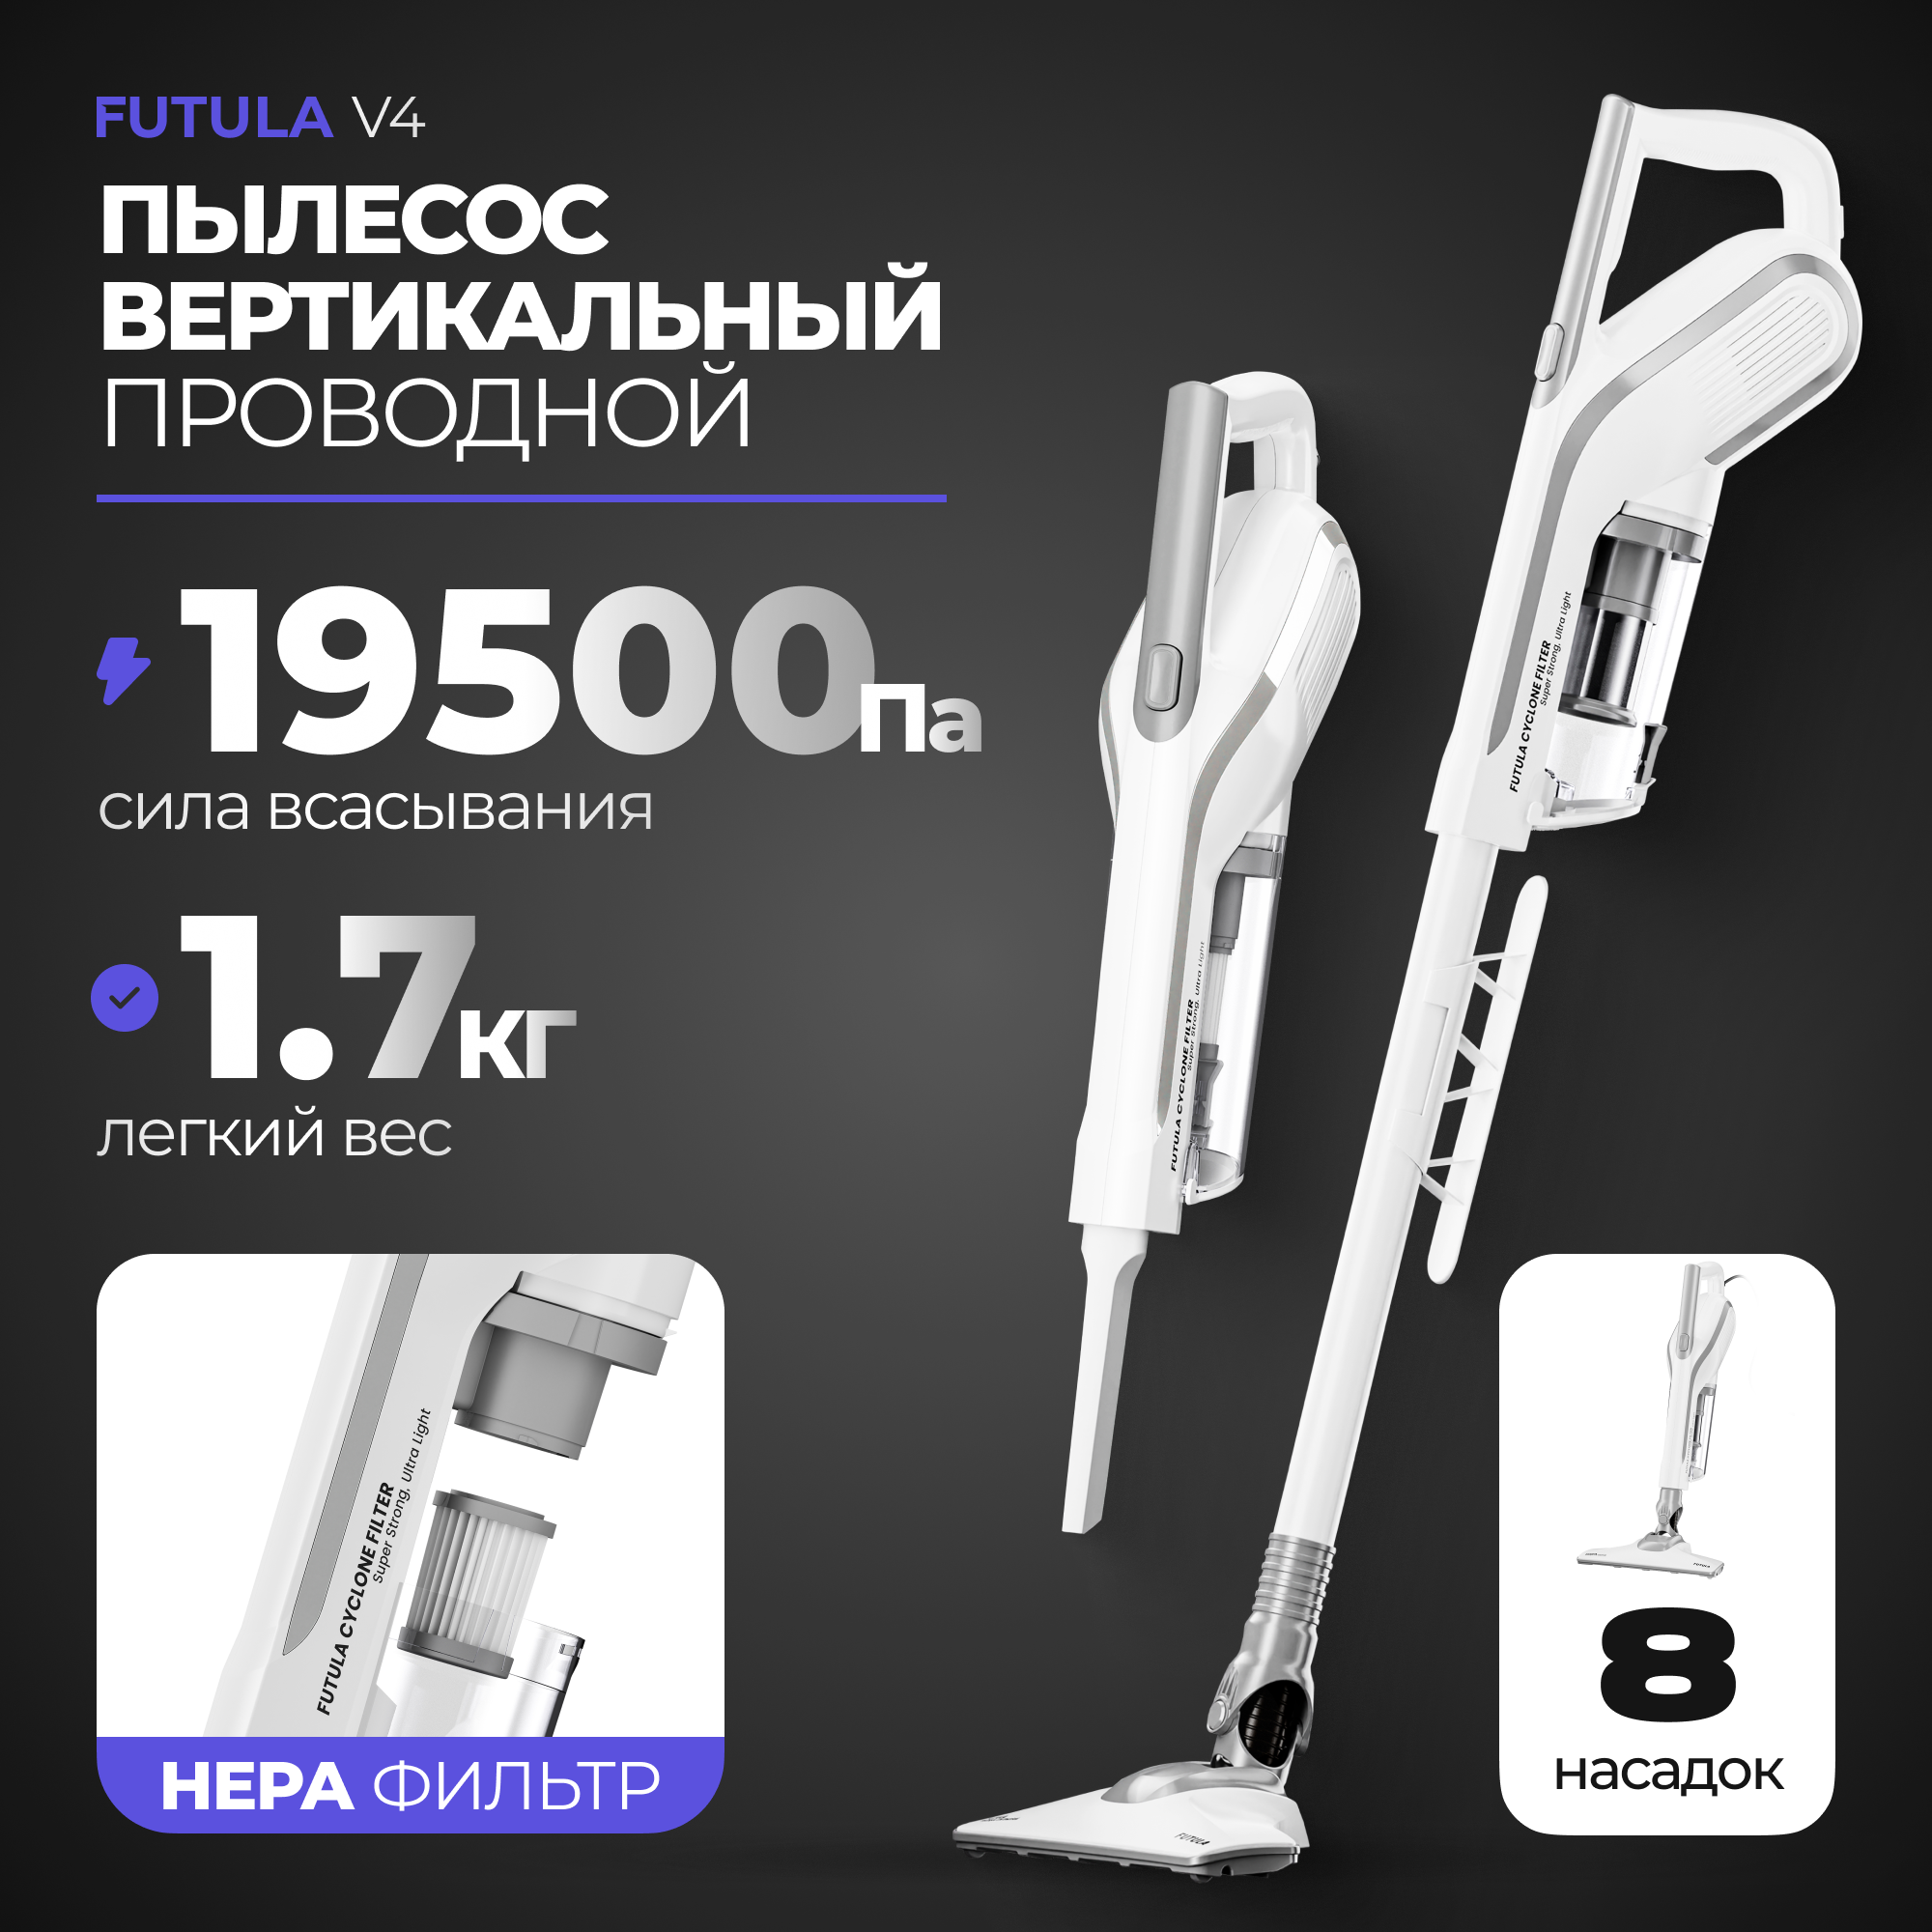 Пылесос Futula Vacuum Cleaner V4 белый – купить в Москве, цены в интернет-магазинах на Мегамаркет